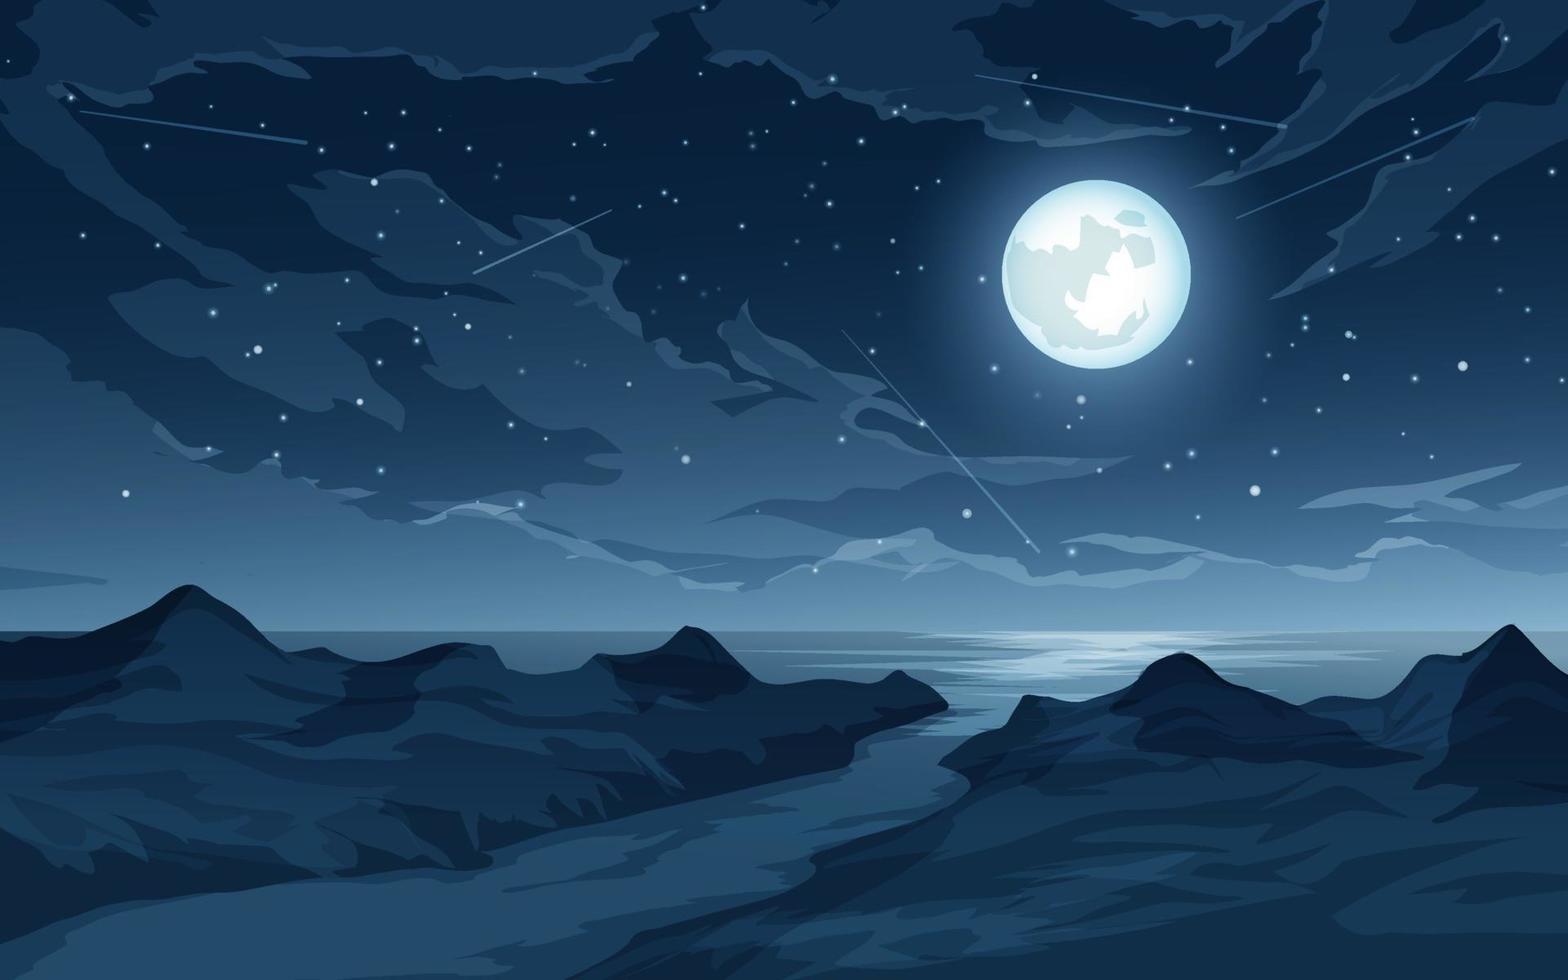 Ilustración nocturna con luna llena, estrellas, estrellas fugaces, nubes, mar y río. vector